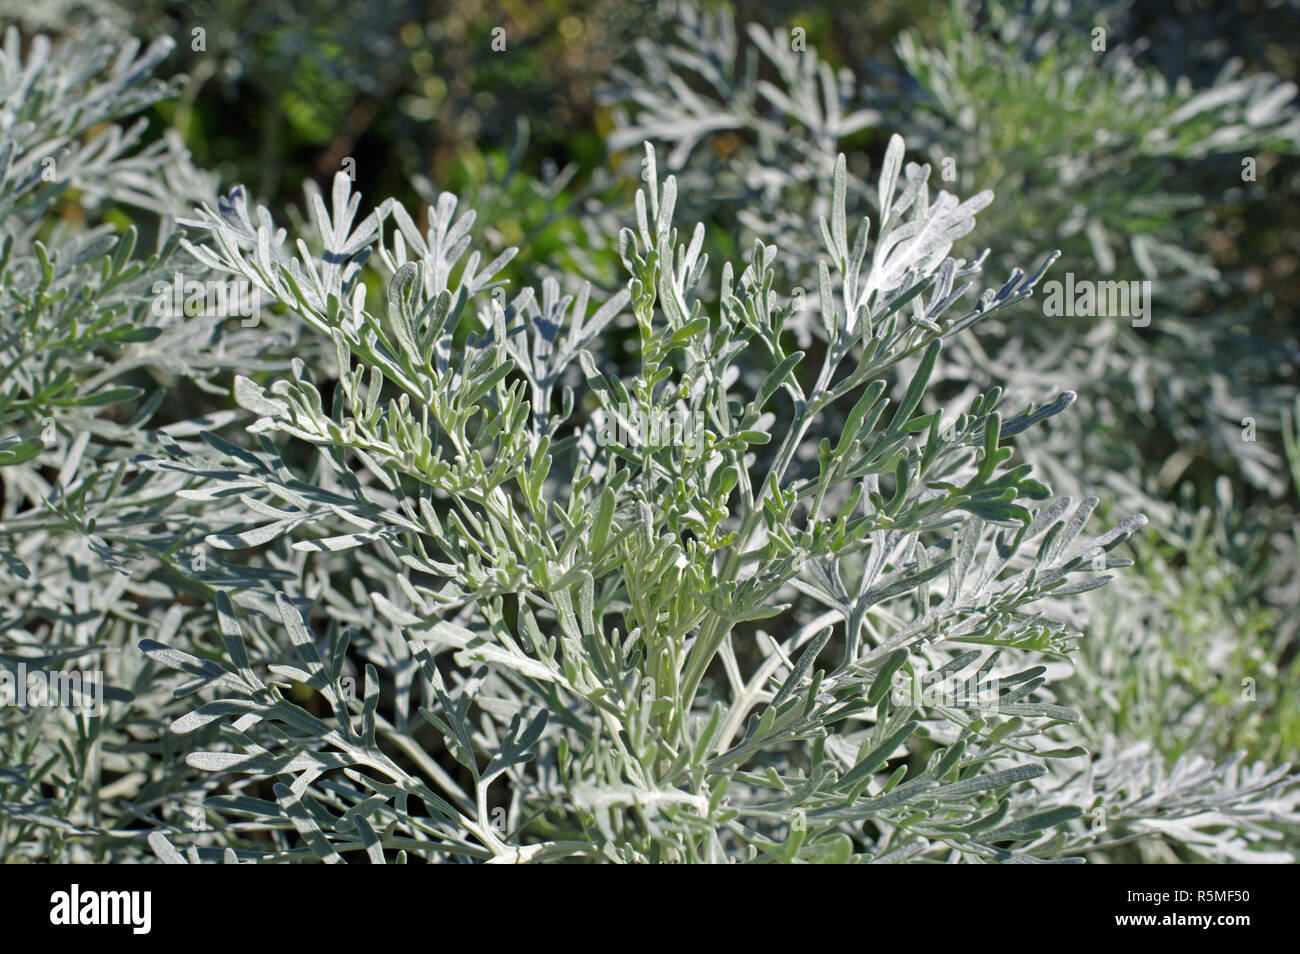 Las hojas de la Artemisia caerulescens, familia Asteraceae (Compositae), el ajenjo dejados azulado o azulado mugwort Foto de stock